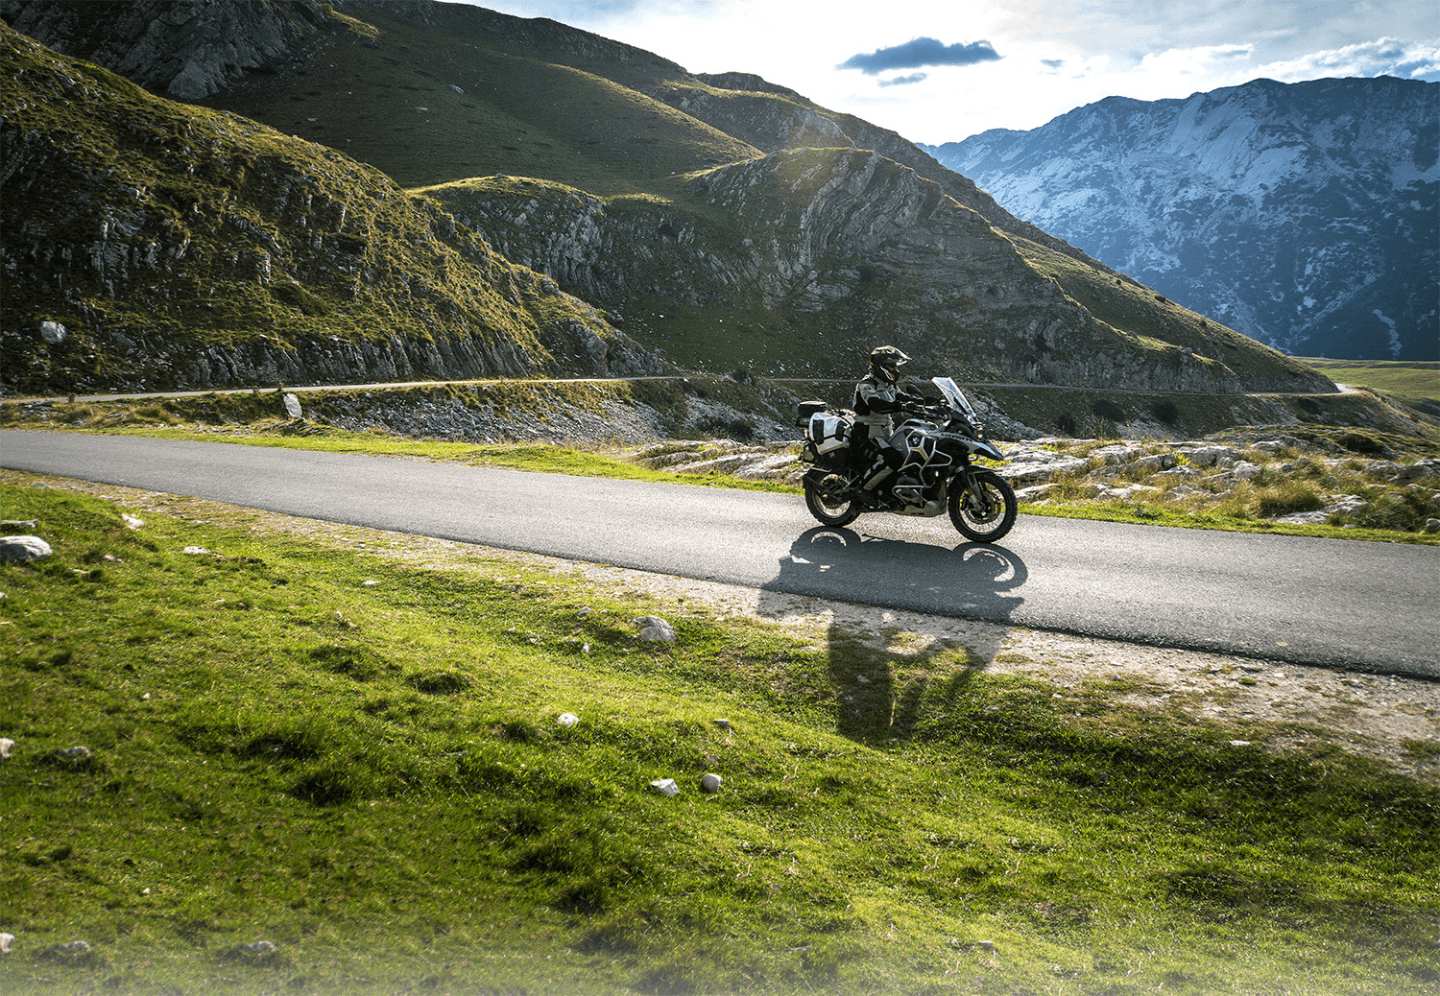 Cùng bảo hiểm AAA khám phá 4 lợi ích tuyệt vời khi du lịch bằng xe gắn máy - ảnh 1